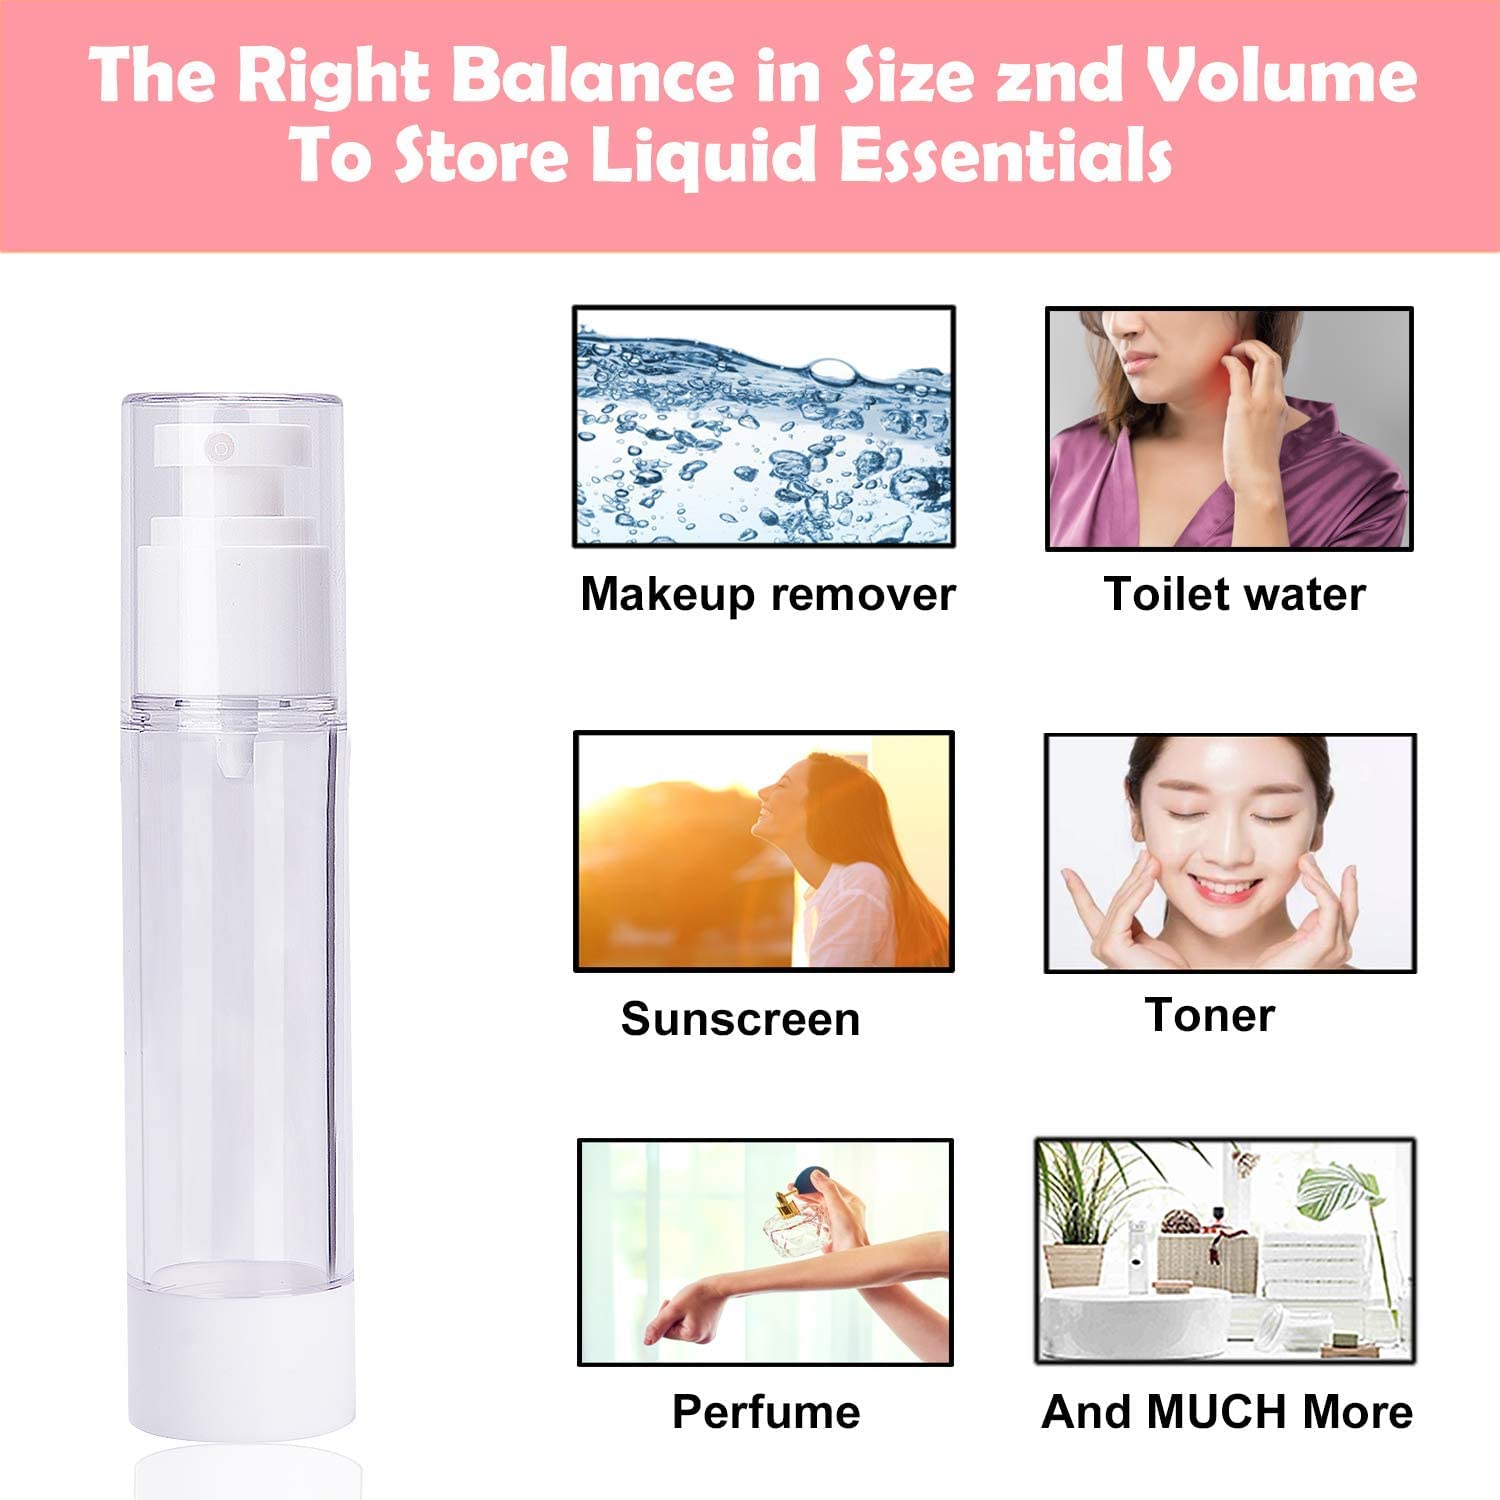 volume to store liquid essentials